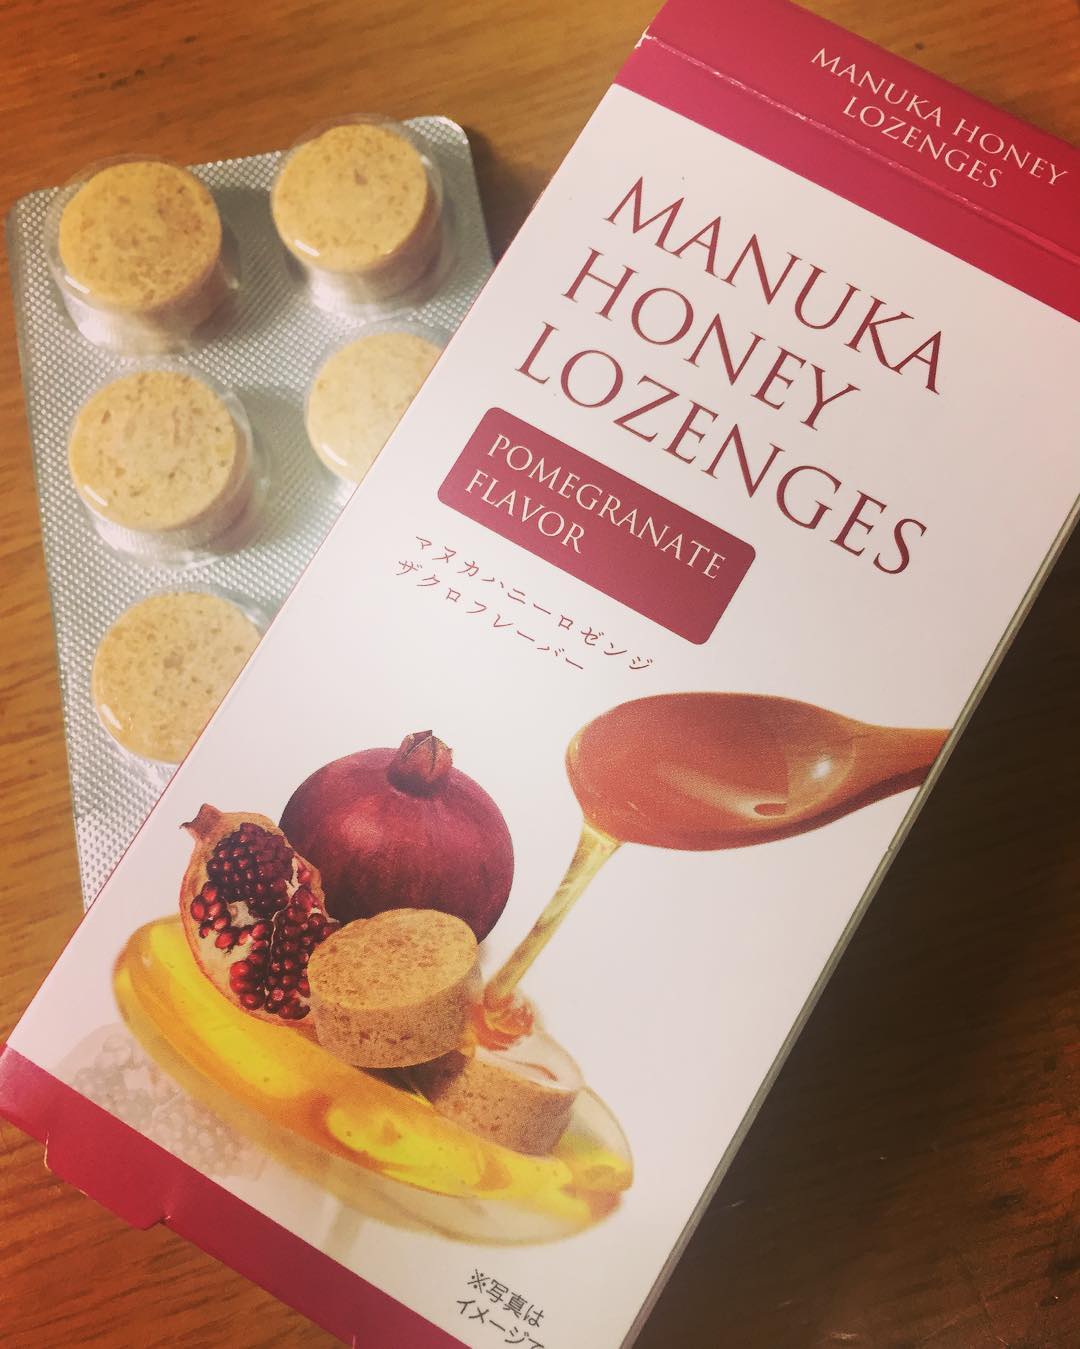 Manuka Lozenges